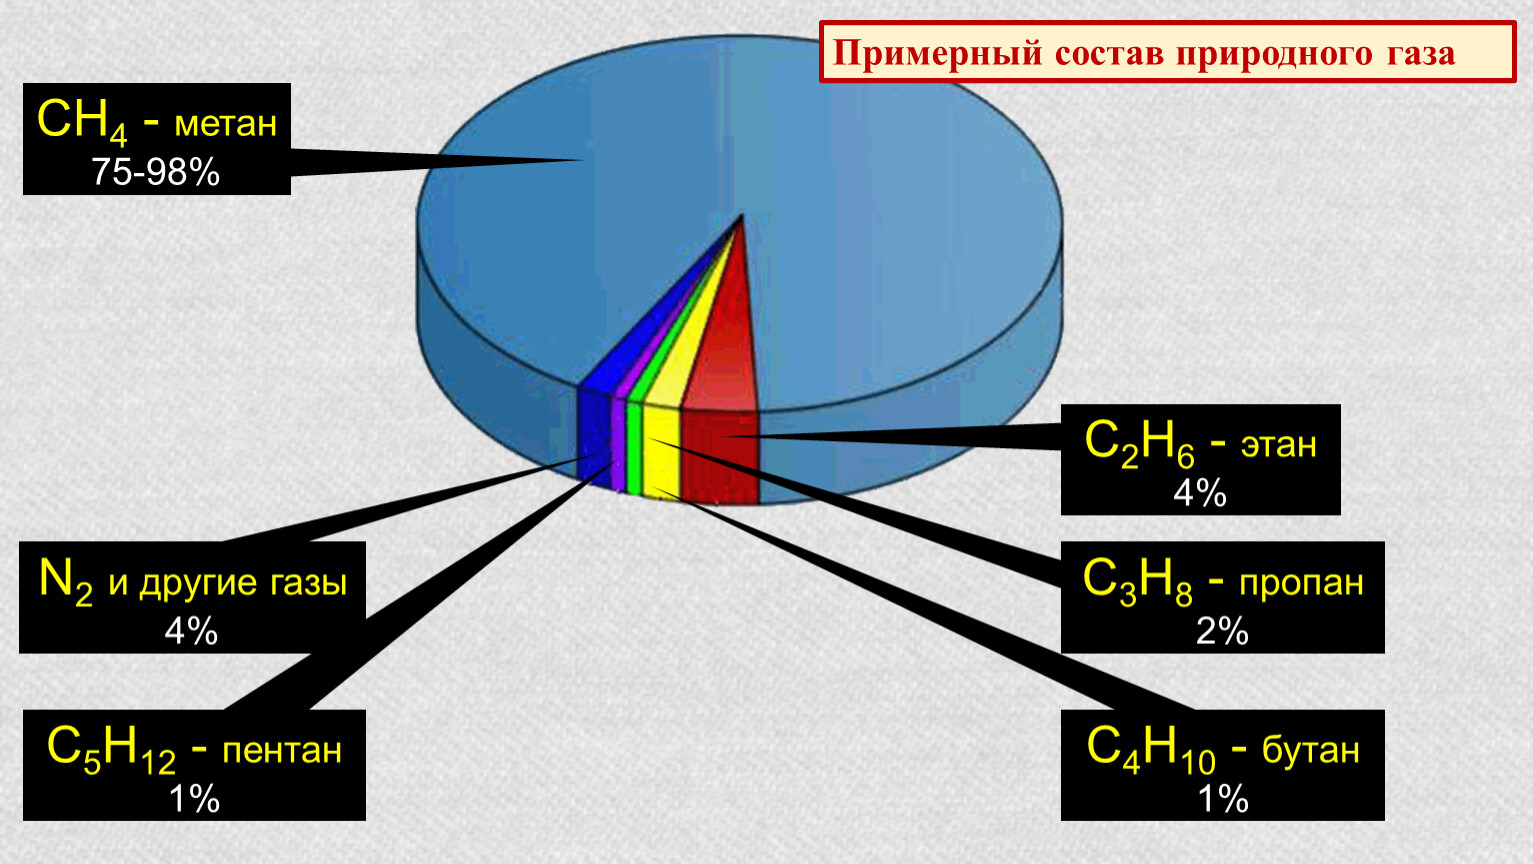 Определение метана. Природный ГАЗ хим состав. Химический состав природного газа диаграмма. Примерный химический состав природного газа. Состав метана газа природный ГАЗ.